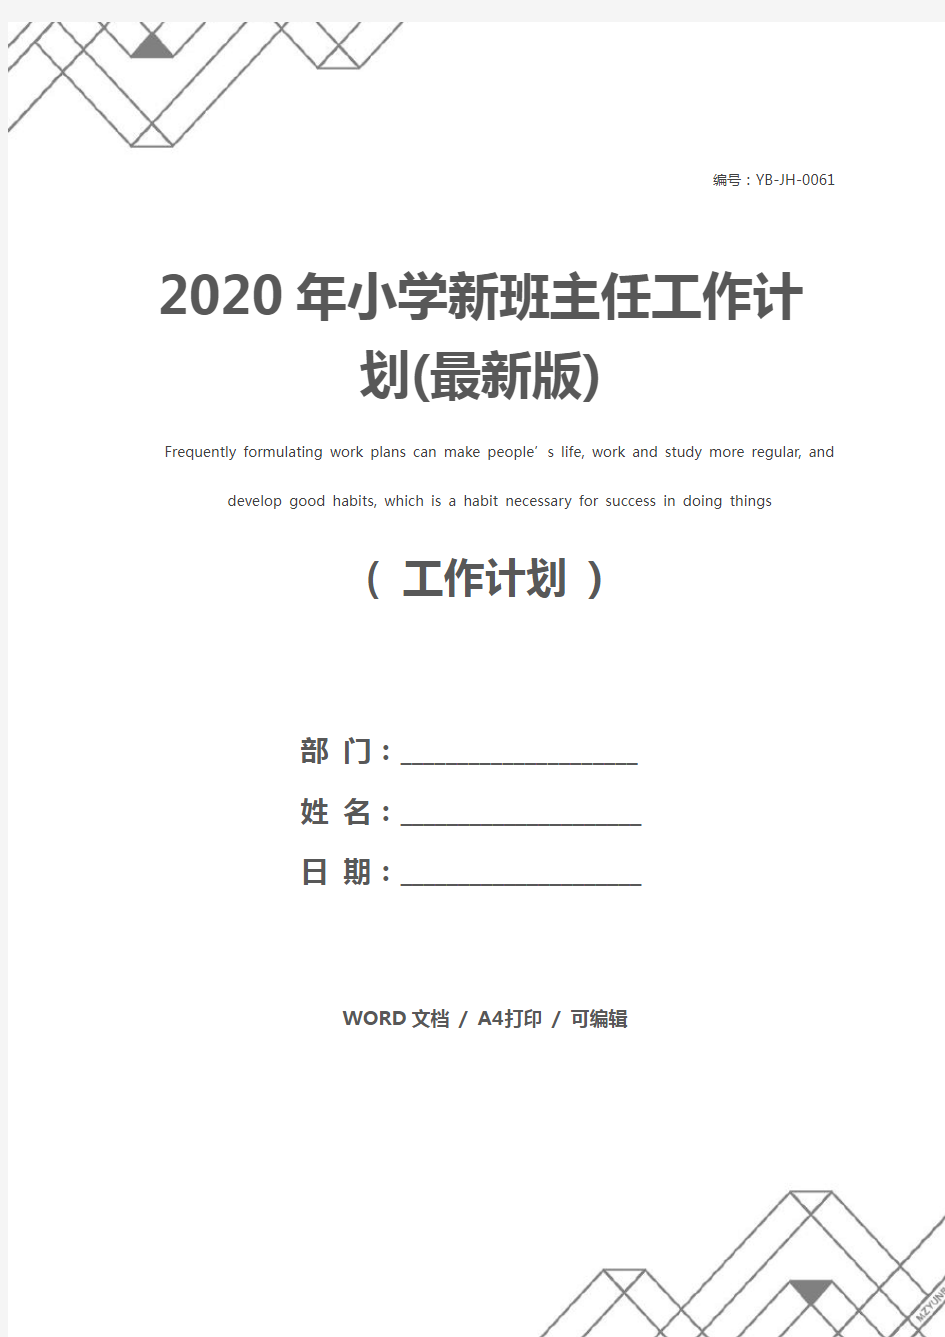 2020年小学新班主任工作计划(最新版)